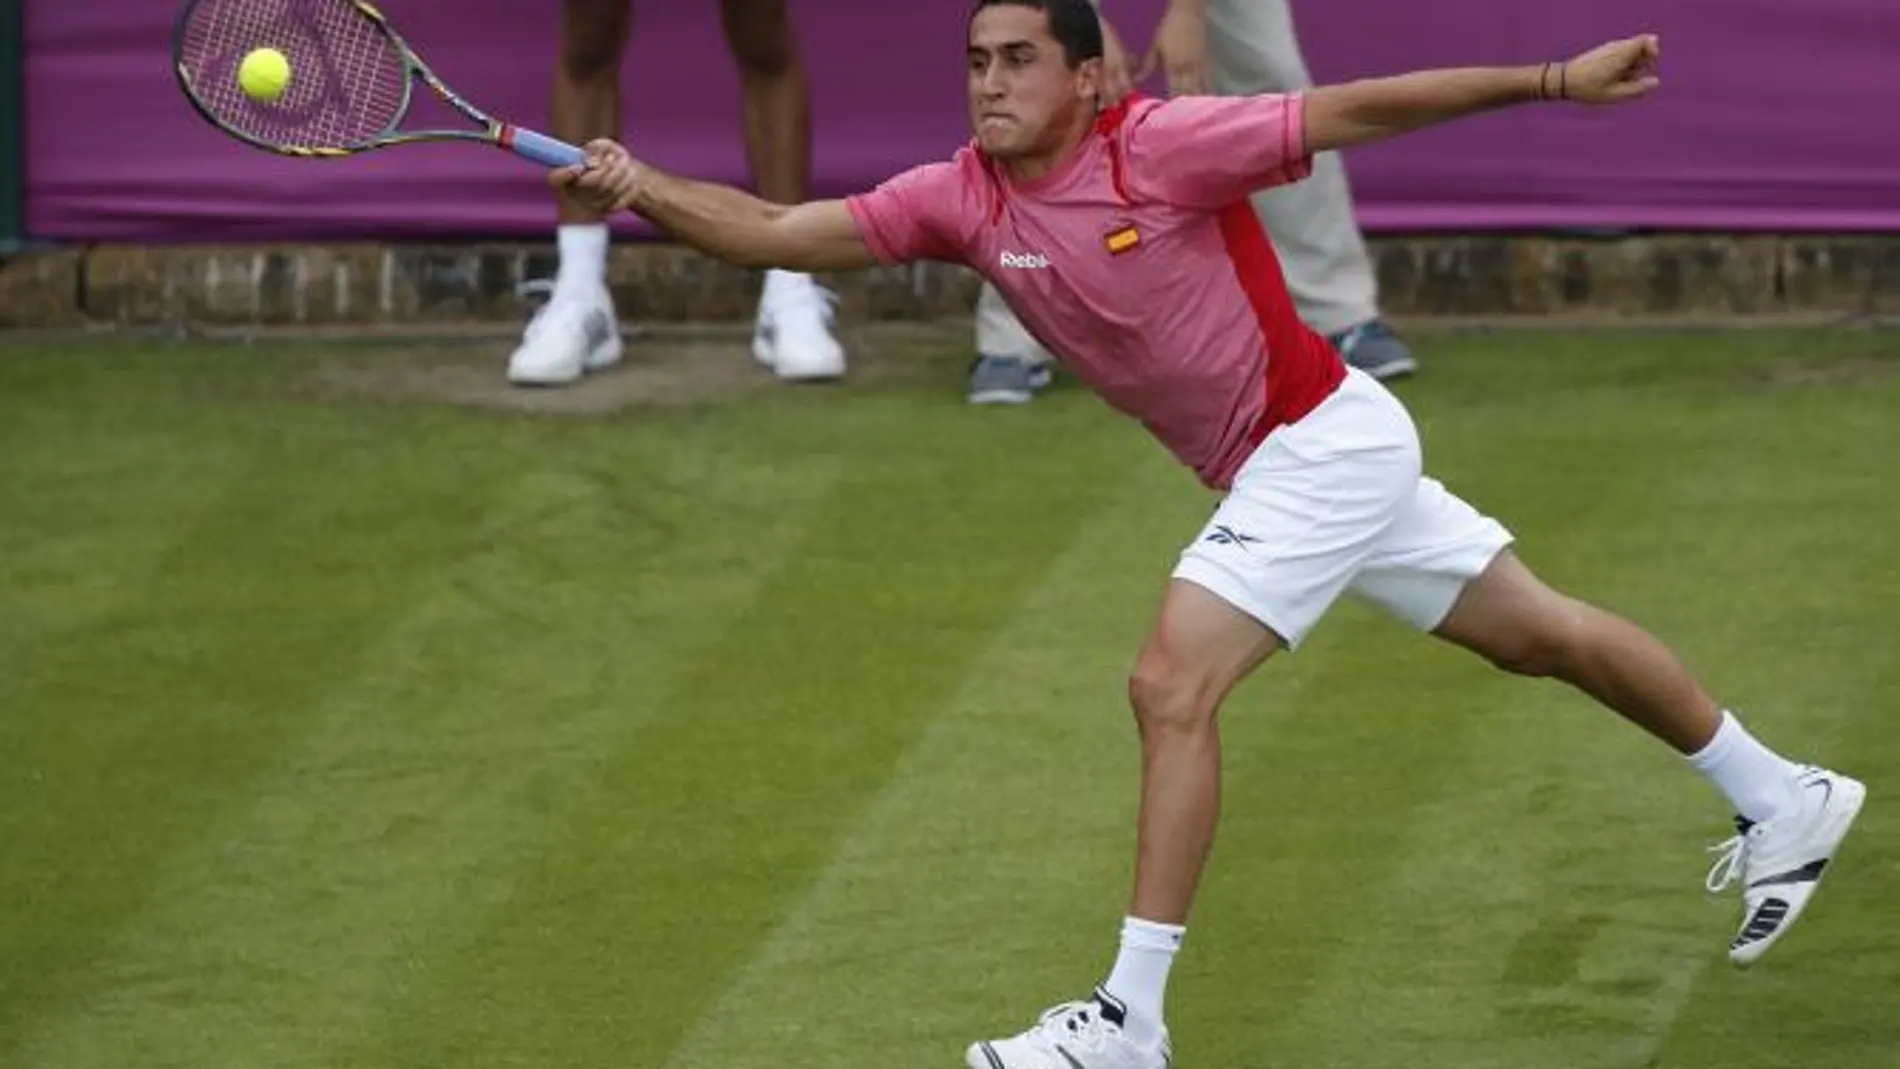 Tenis: Almagro primer español en cuartos de final